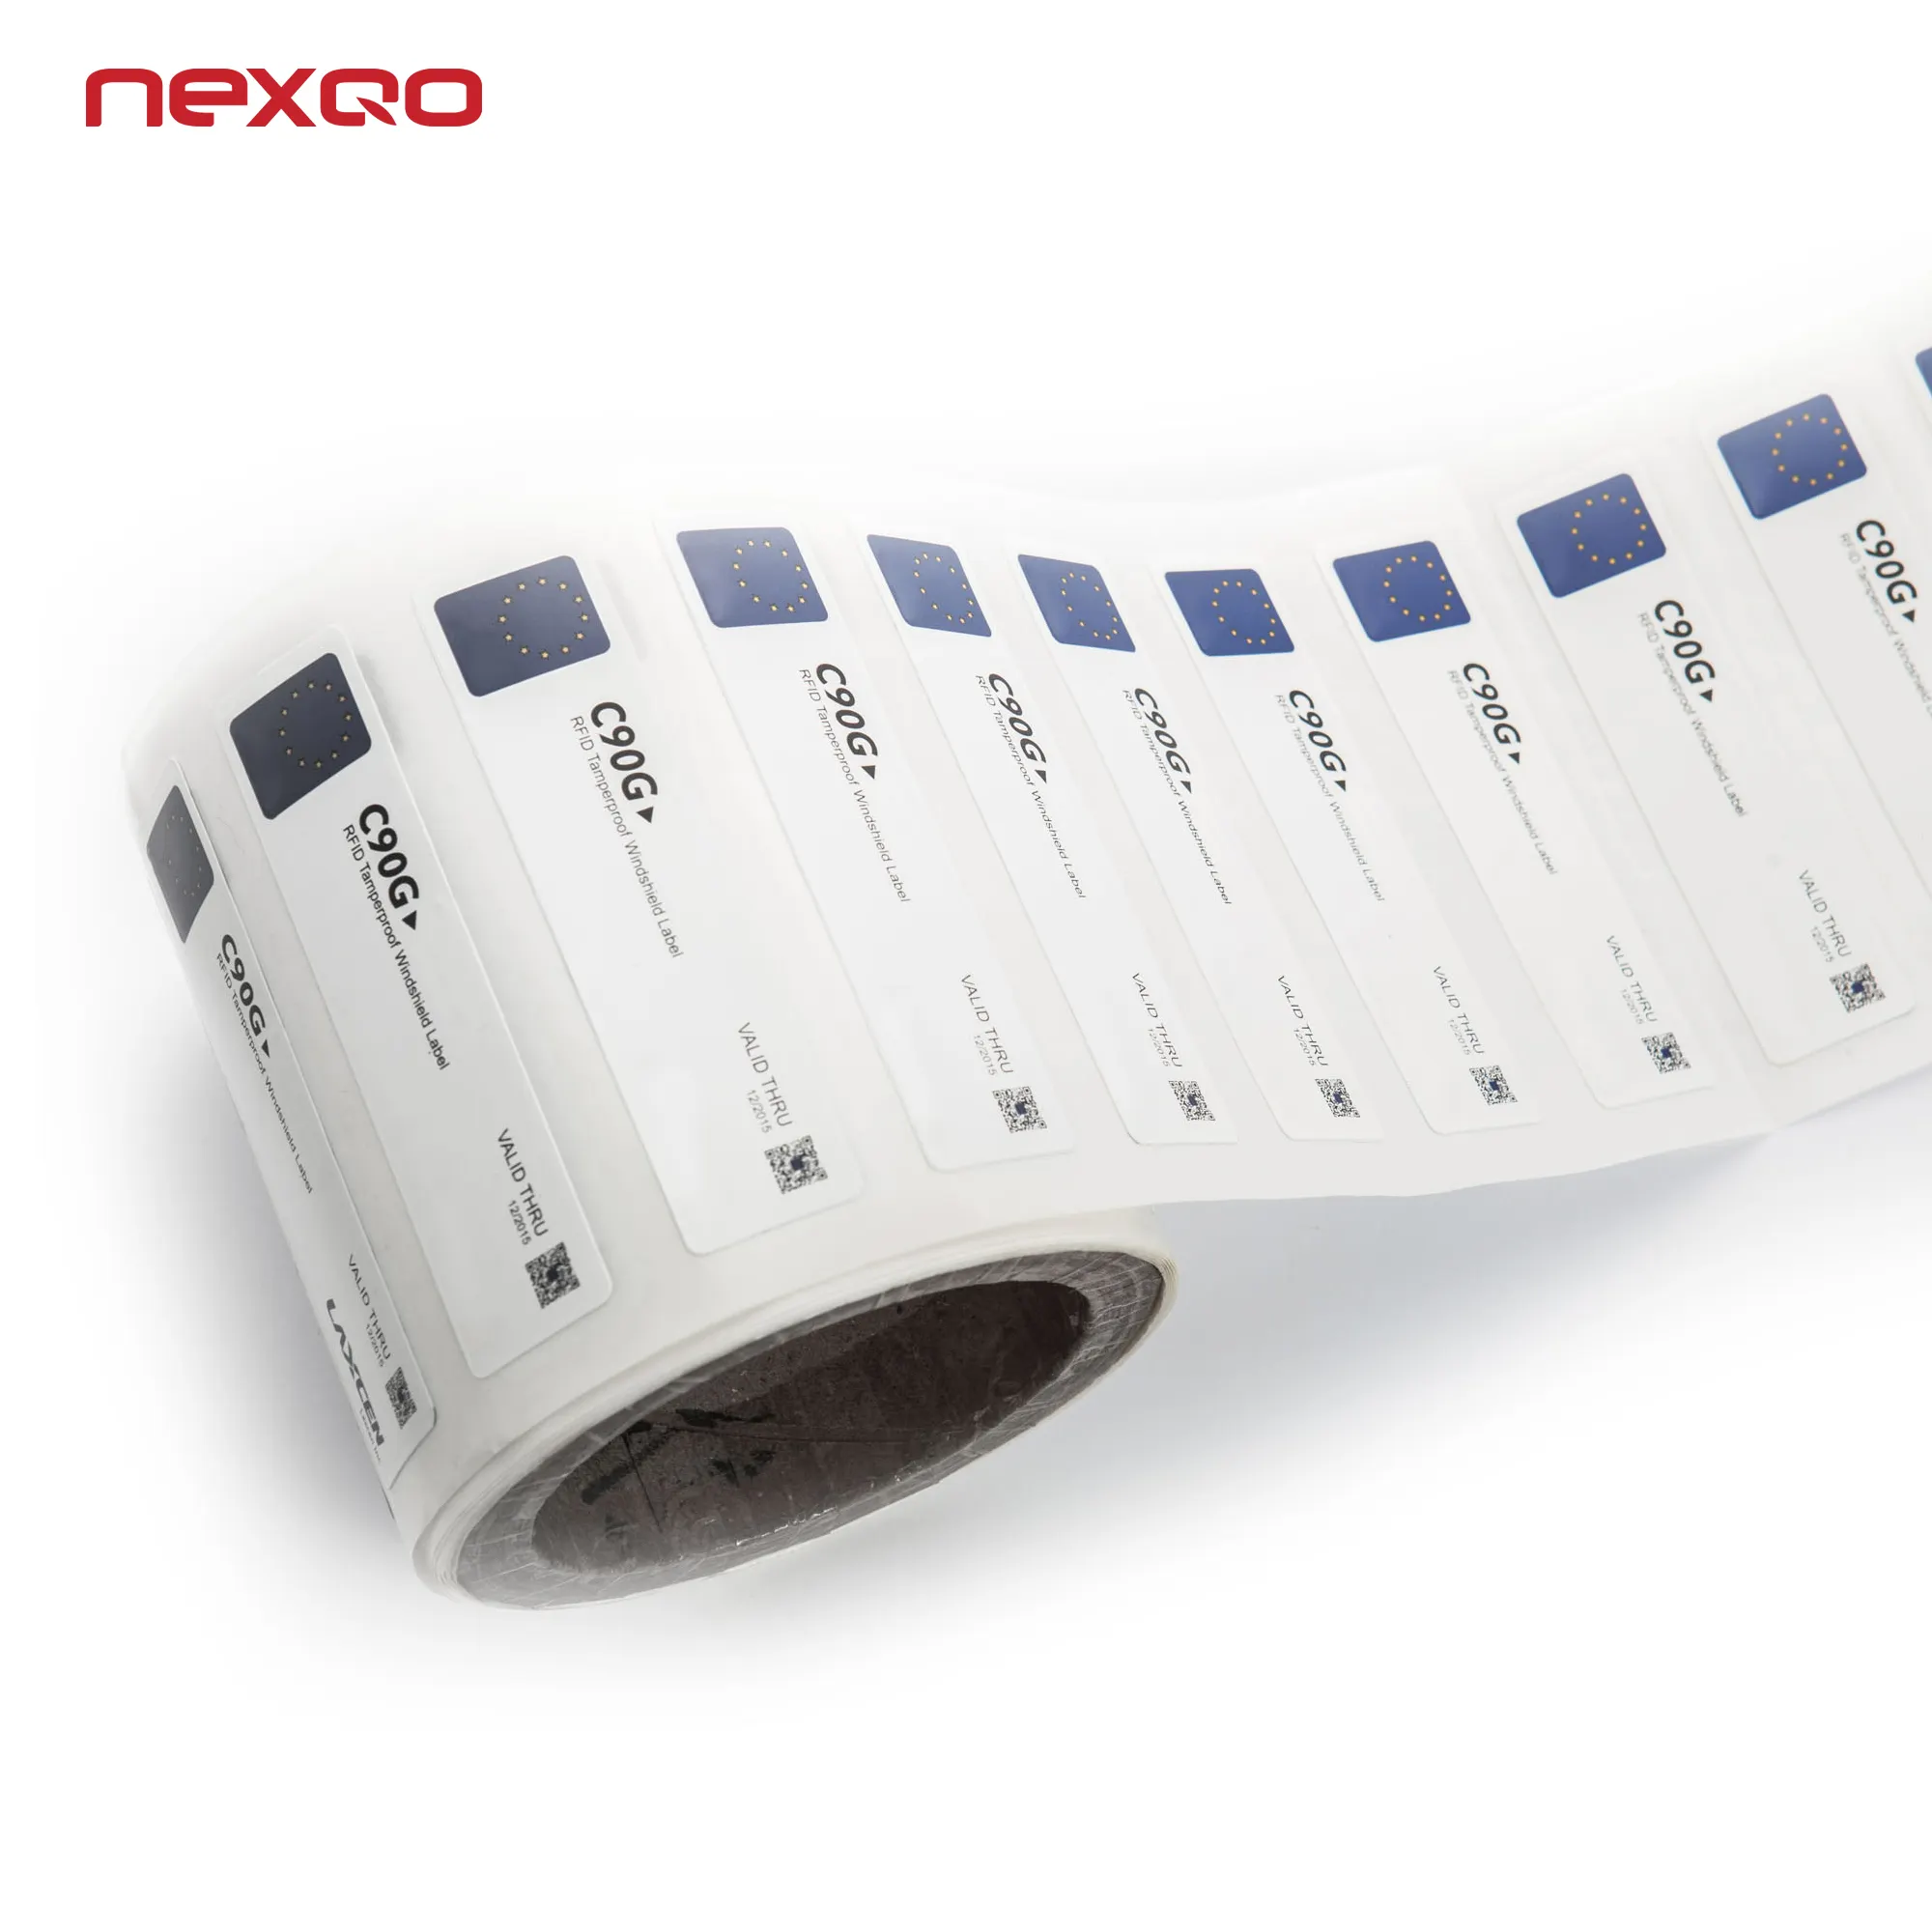 RL01 Nexqo הטוב ביותר מחיר להדפסה נייר חכם NFC תווית תג UHF RFID תווית